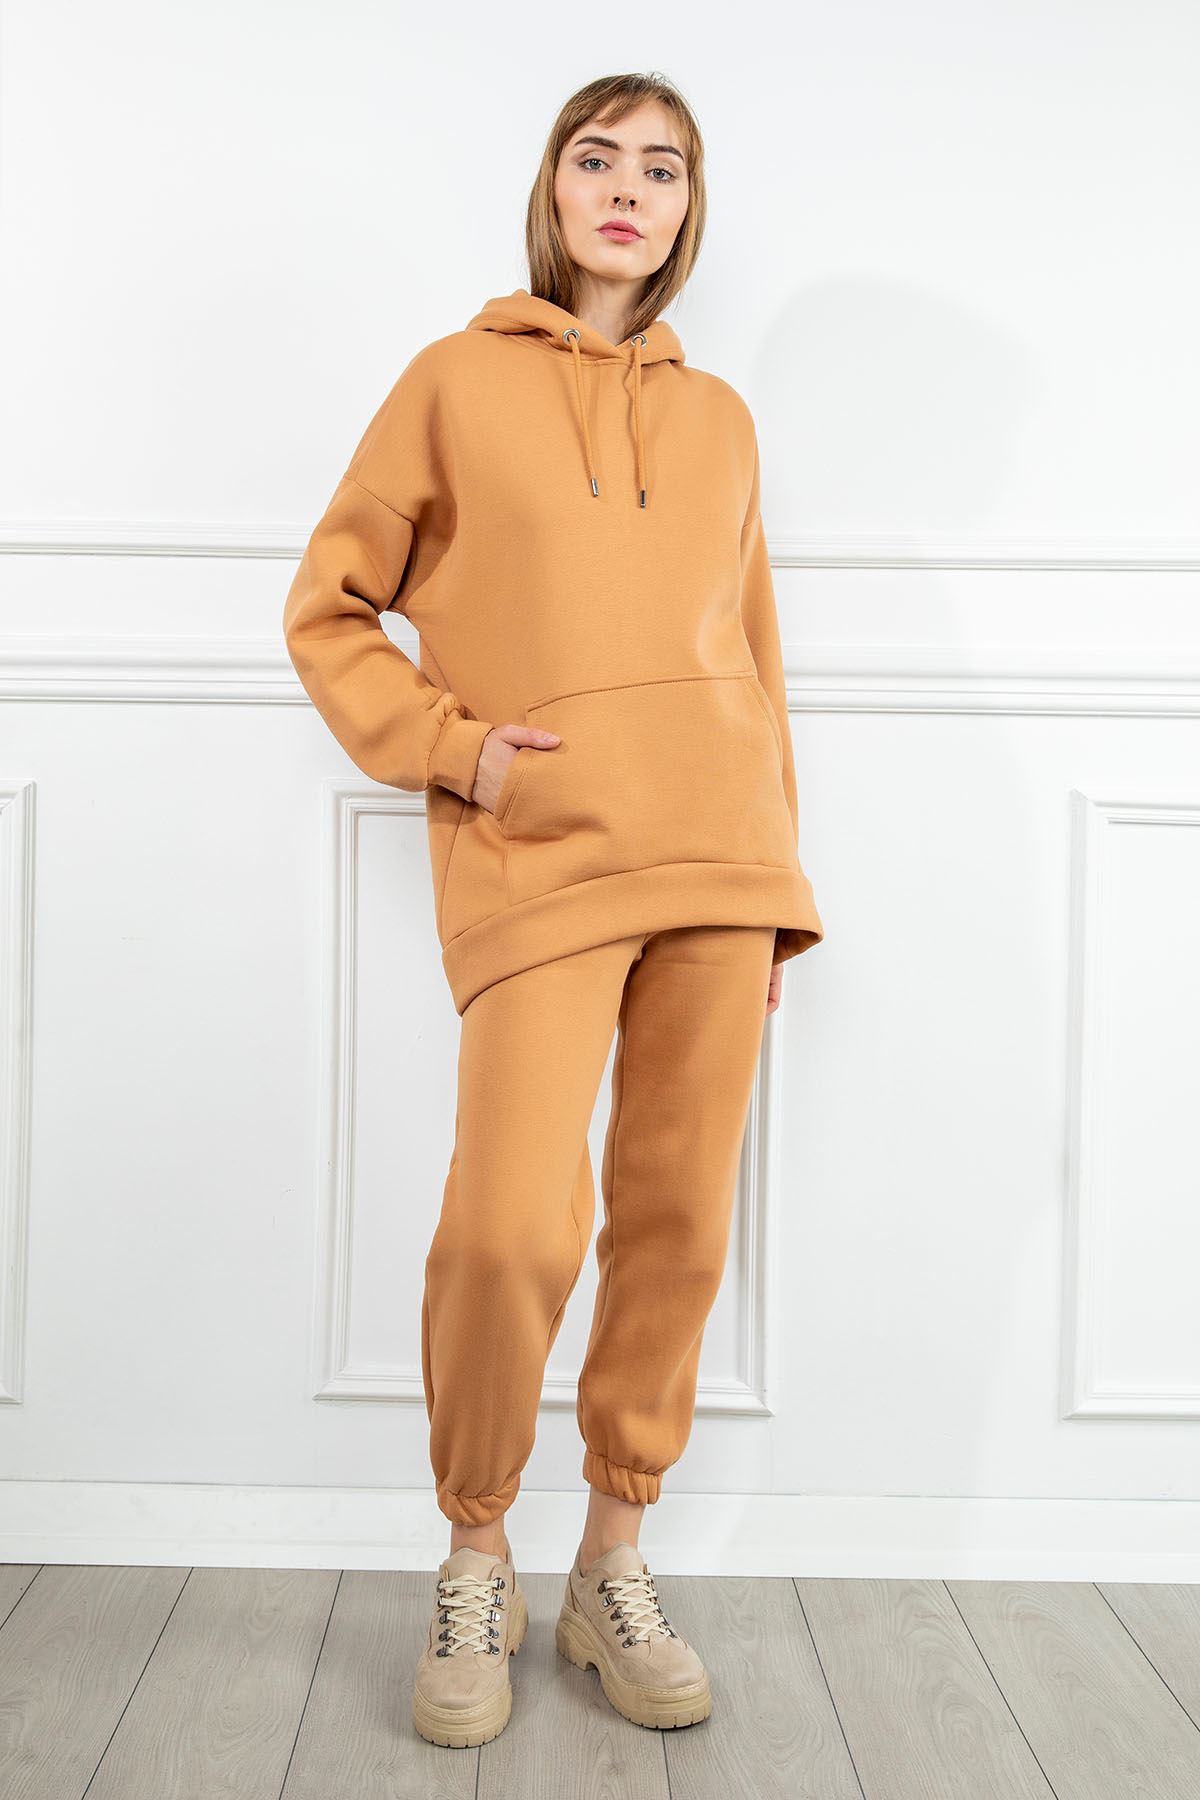 3 İplik Kumaş Uzun Kol Kapüşonlu Oversize/Salaş Kadın Sweatshirt-Camel